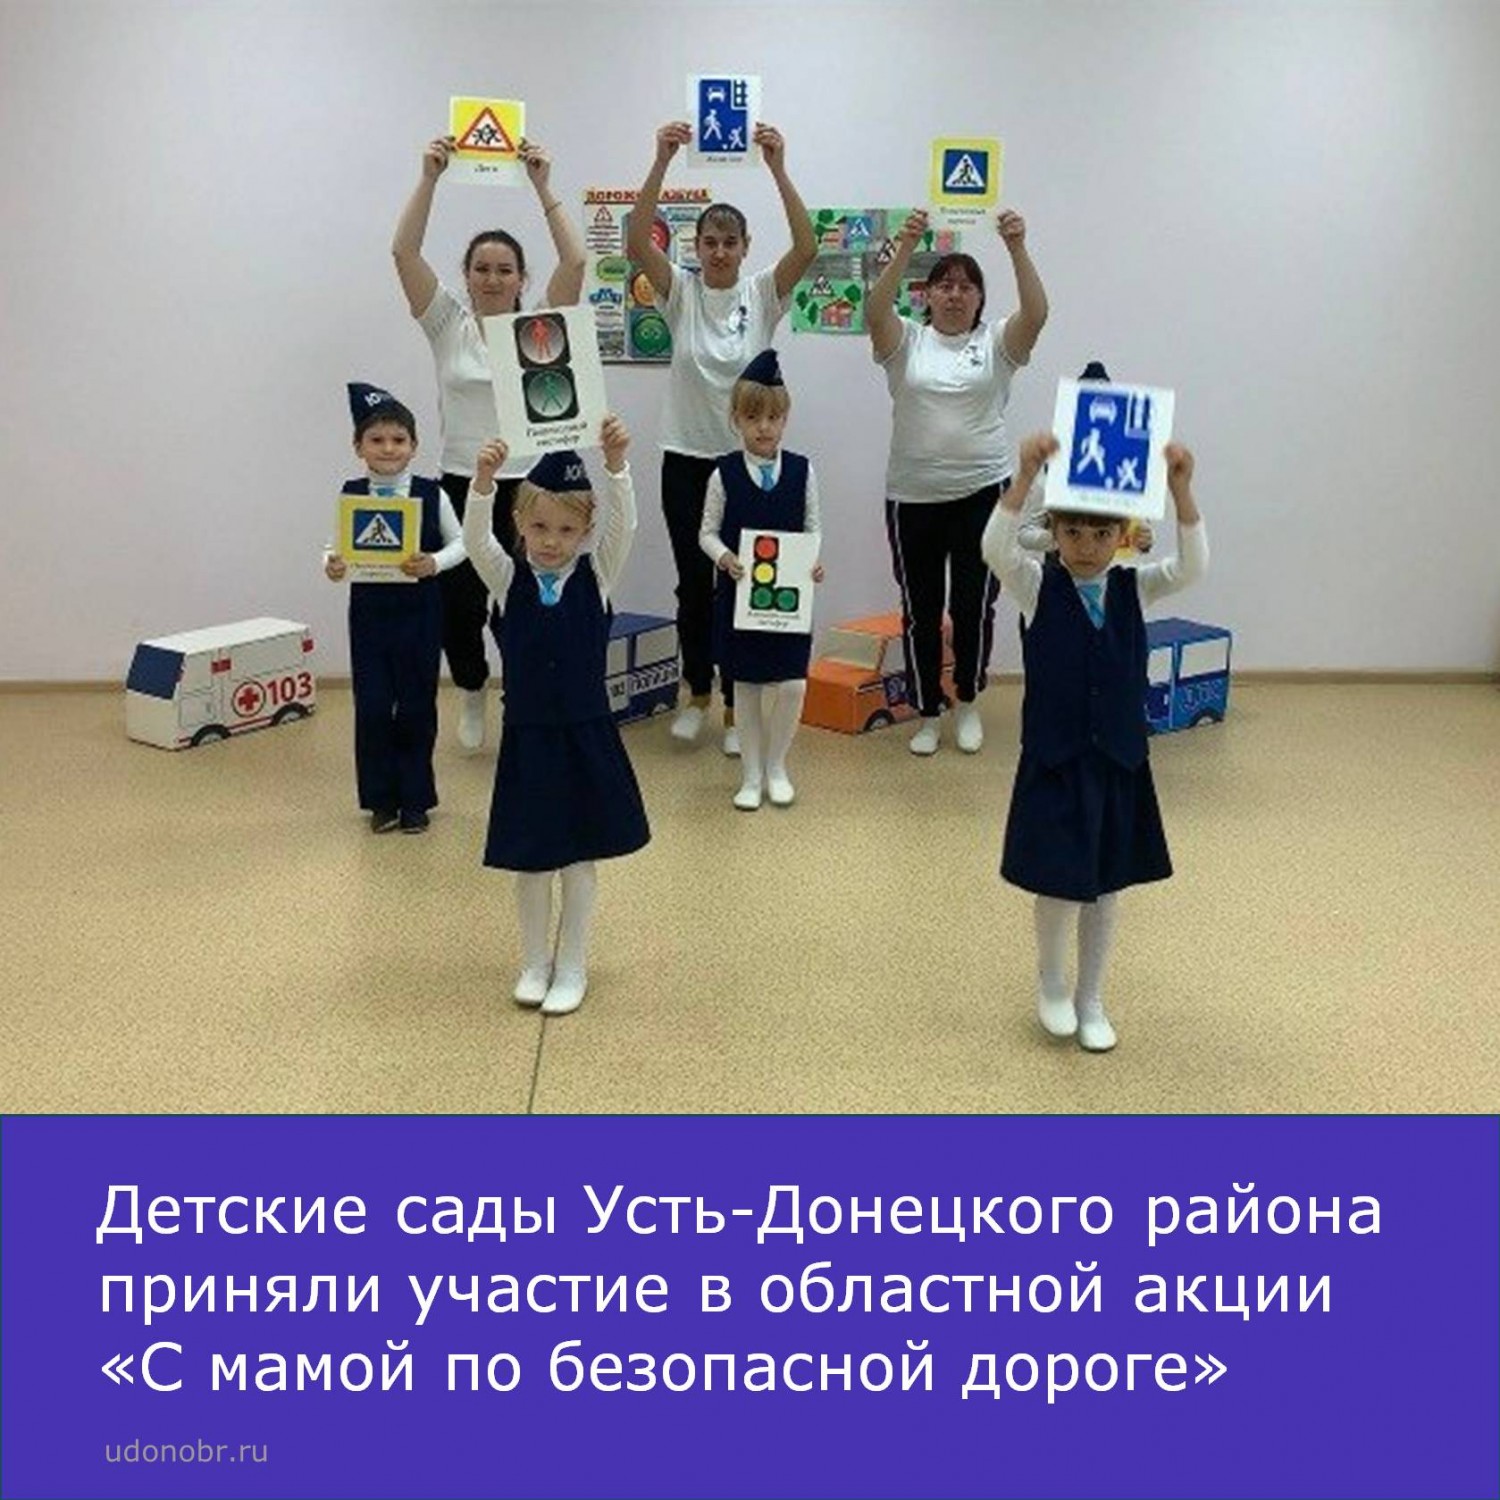 Детские сады Усть-Донецкого района приняли участие в областной акции «С мамой по безопасной дороге»